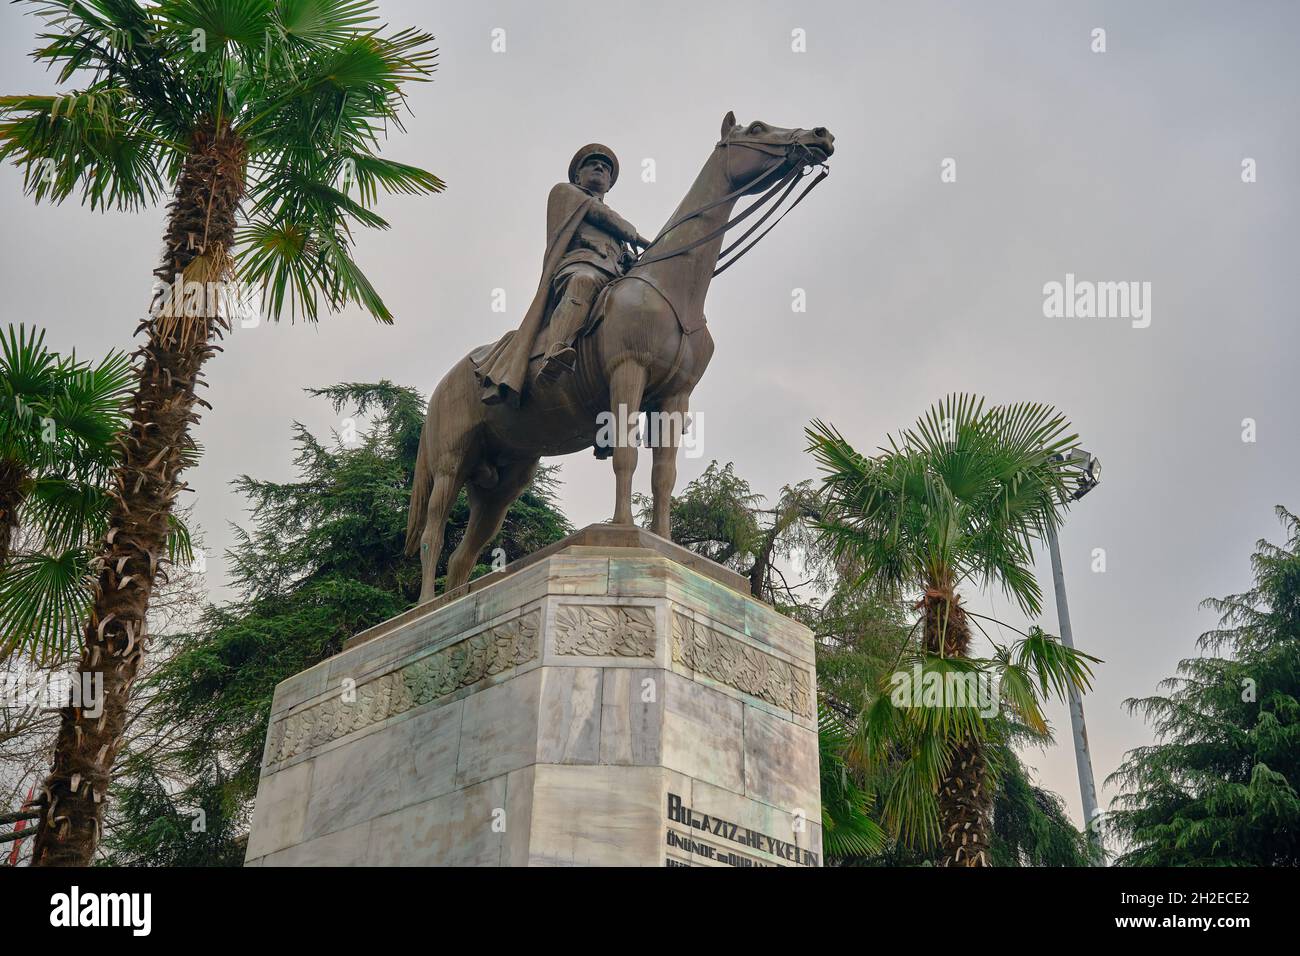 Ataturk fondatore della Repubblica Turca nel centro di Bursa (heykel) durante il tempo piovoso e coperto con bandiera turca e scultura ricoperta da alberi Foto Stock